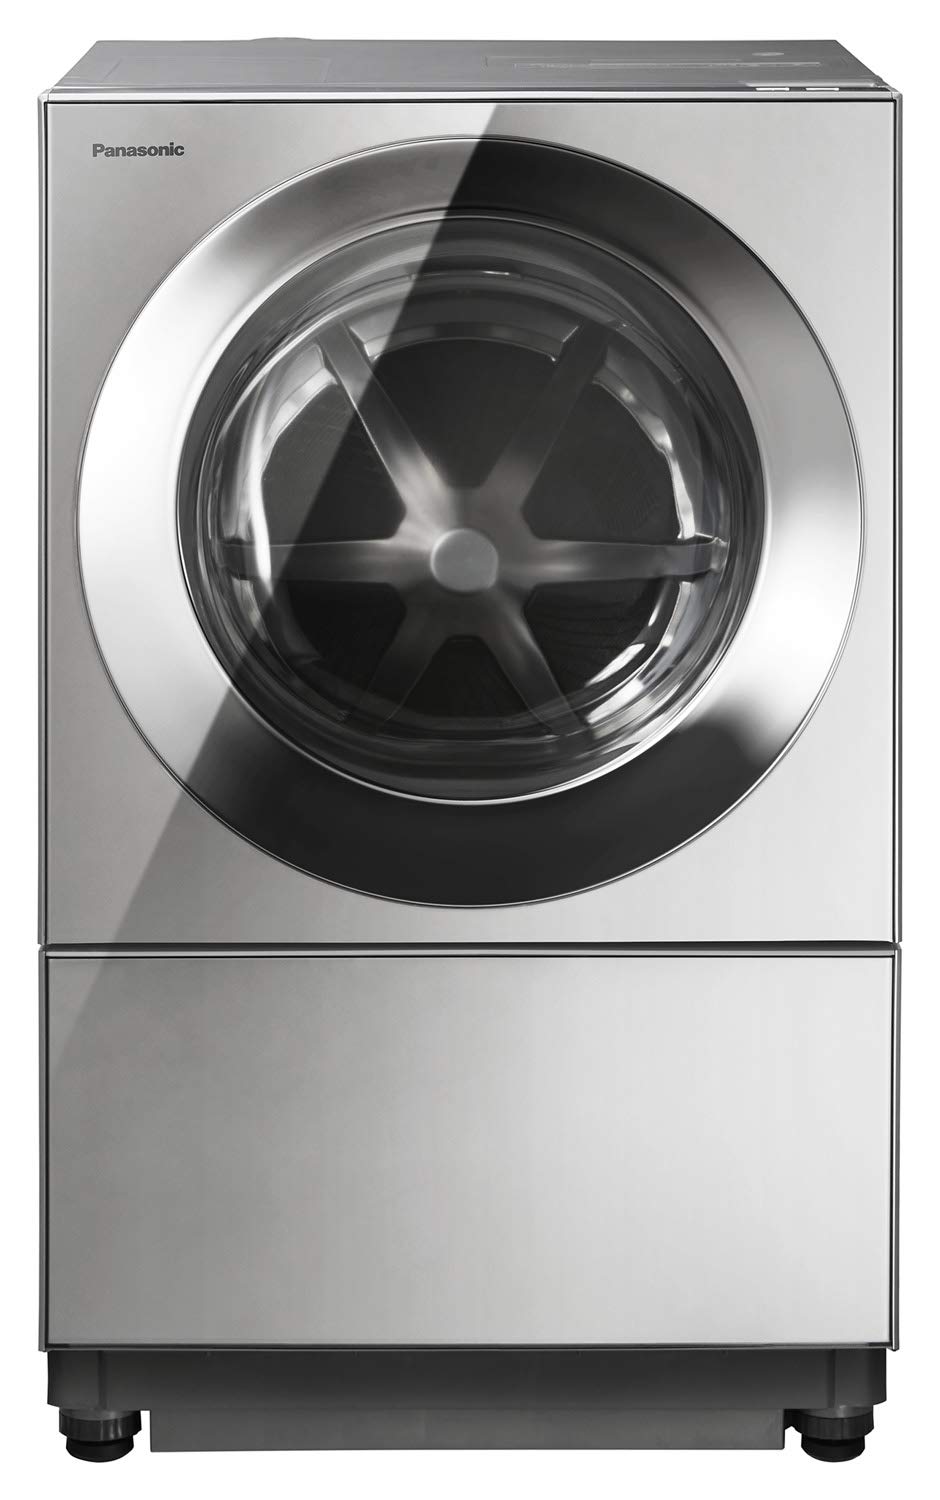 15位：パナソニック ななめドラム洗濯乾燥機 Cuble(キューブル) 10kg 左開き プレミアムステンレス NA-VG2300L-X